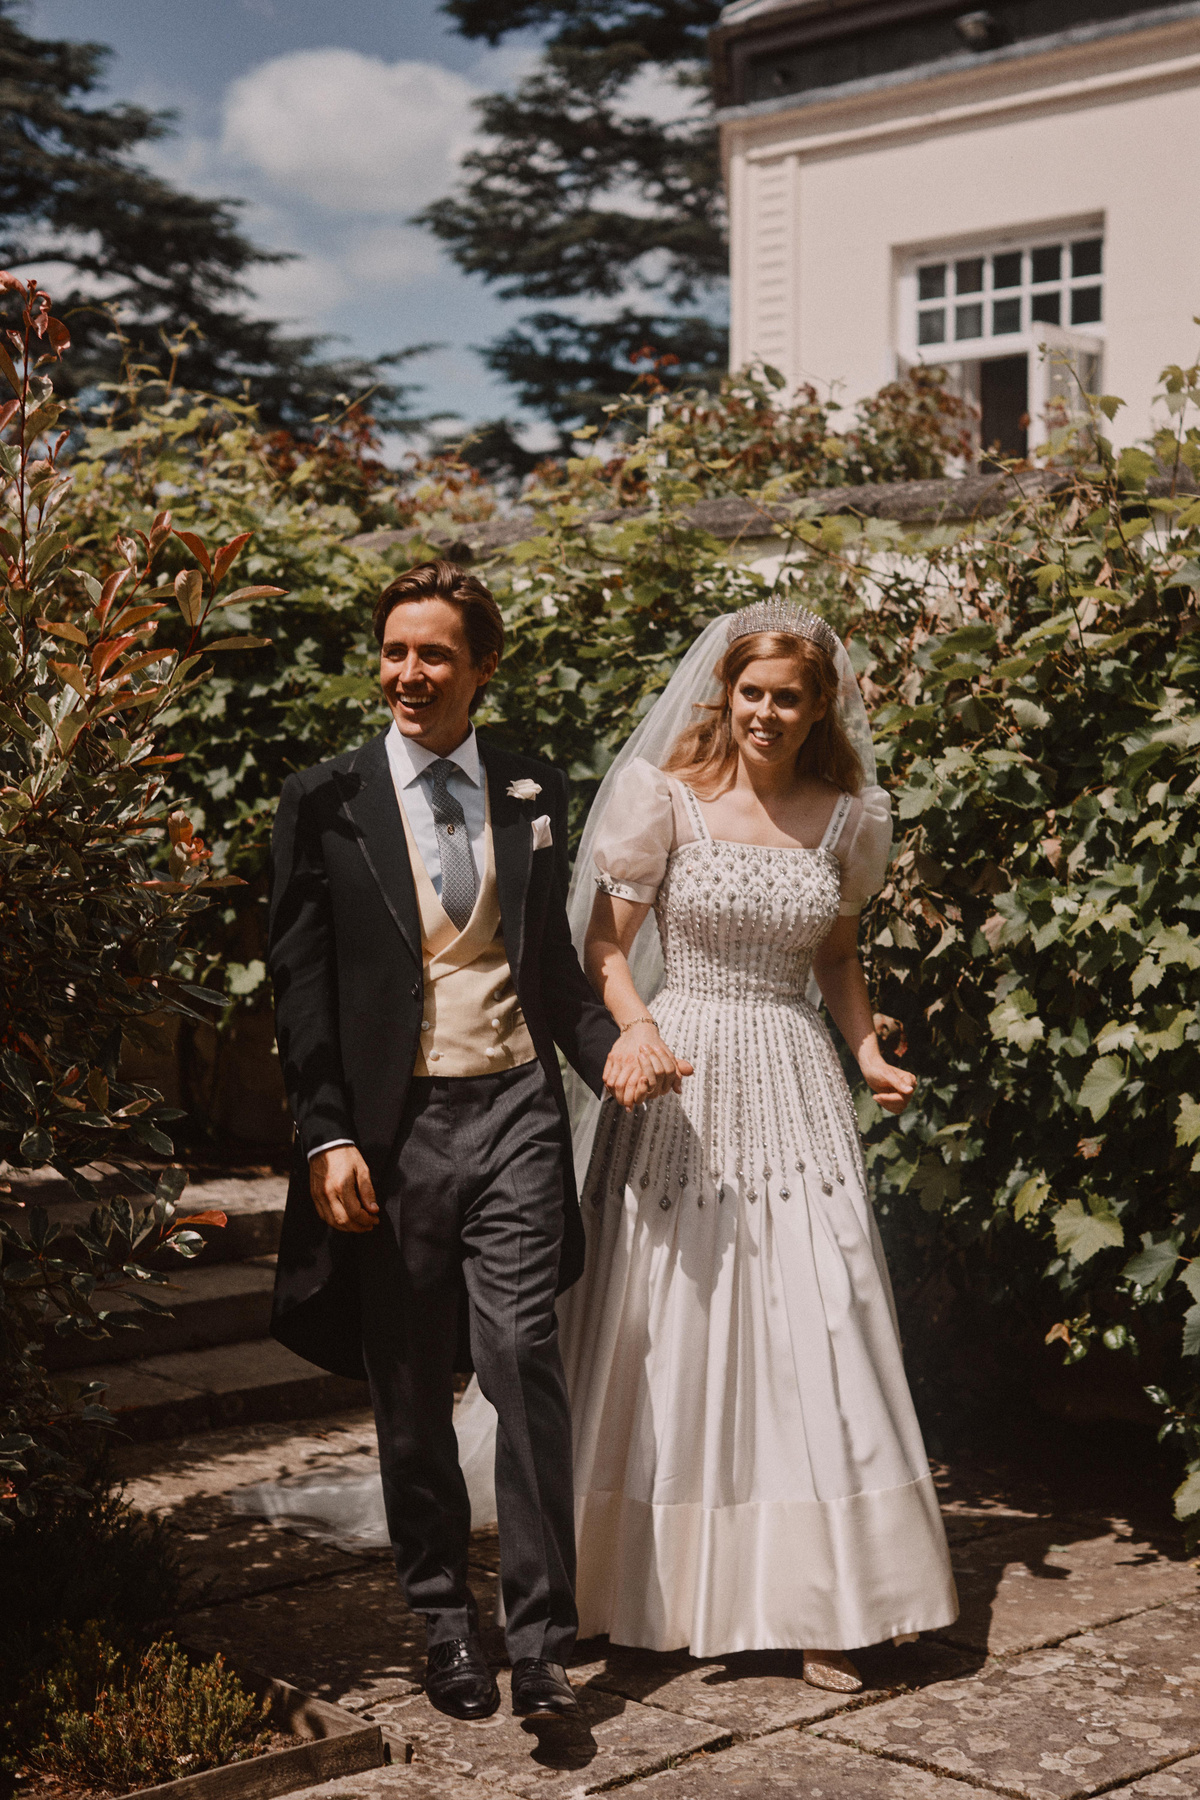 Hivatalos esküvői fotósorozat Beatrix hercegnőről és Edoardo Mapelli Mozziról.